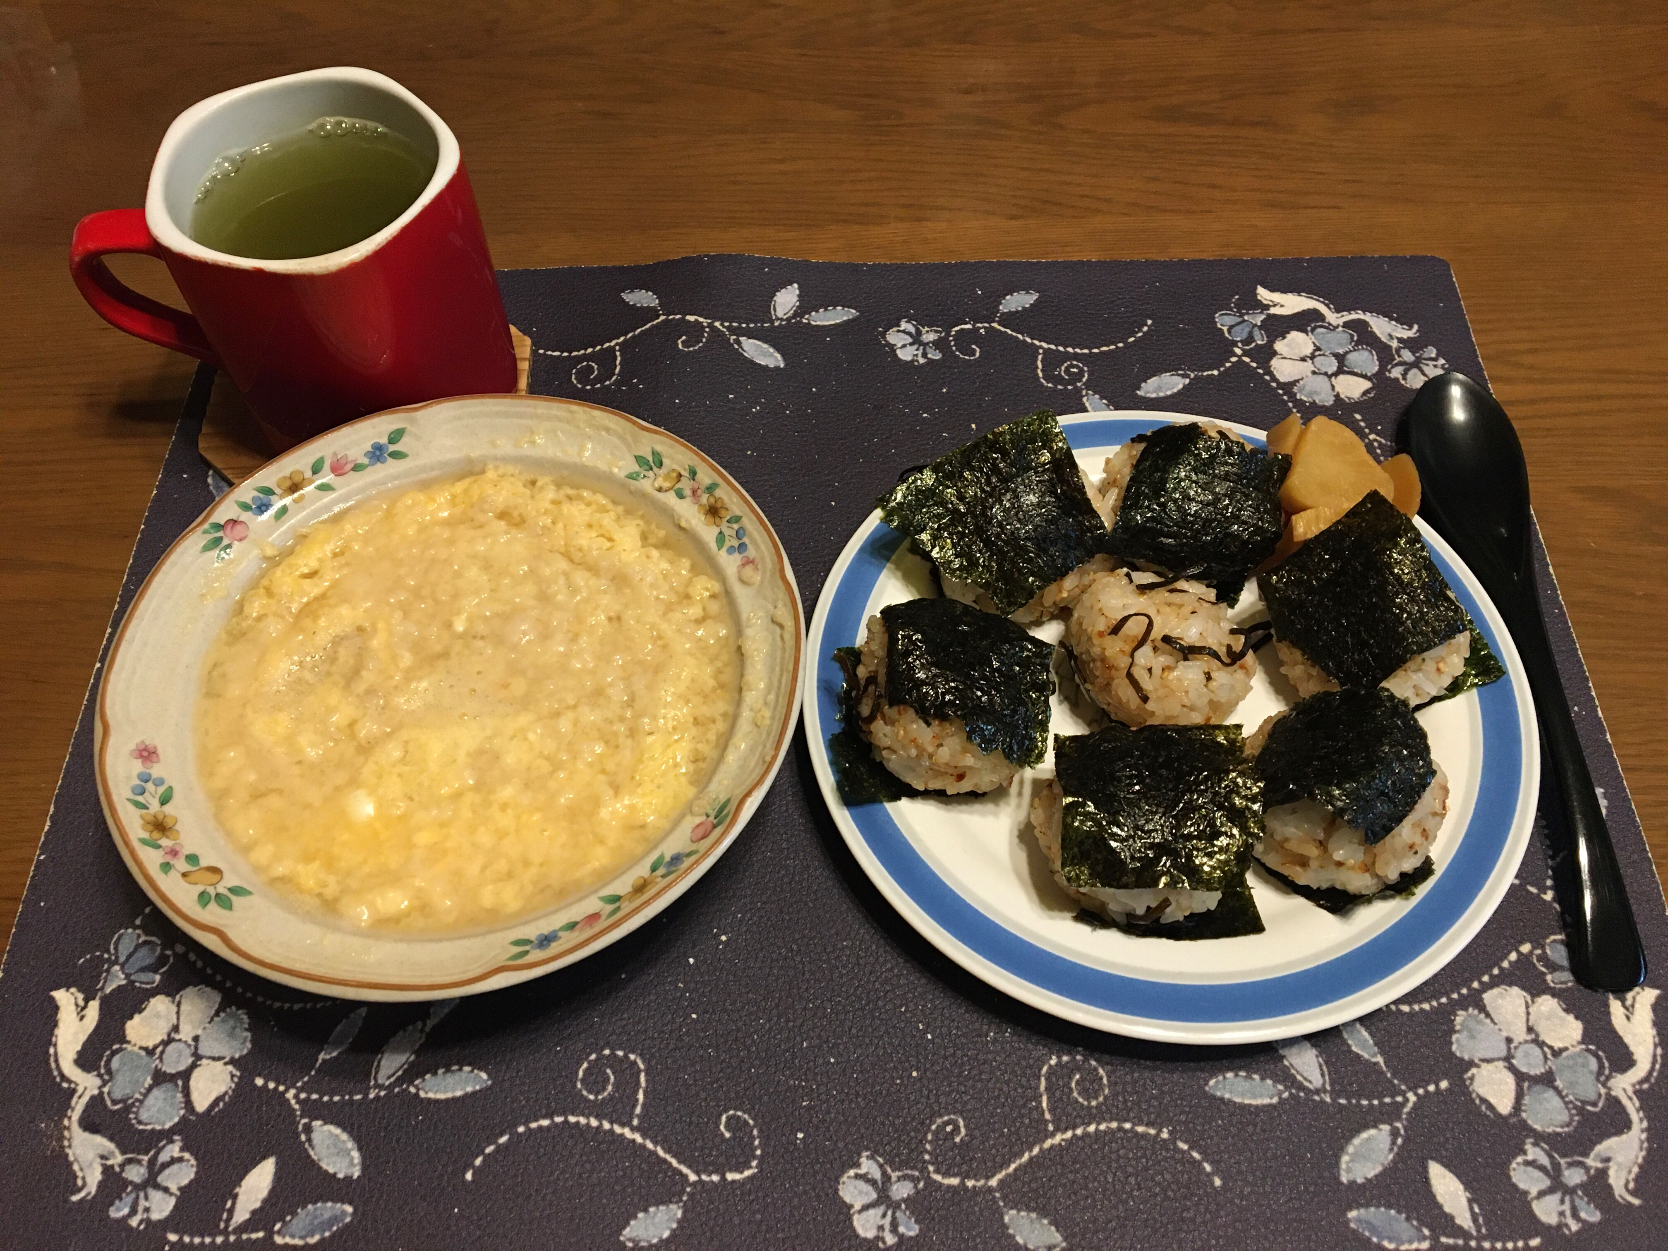 オートミールタマネギスープ粥、鰹ふりかけと塩昆布のおにぎり、たまり漬け風沢庵、熱い日本茶(朝ご飯)